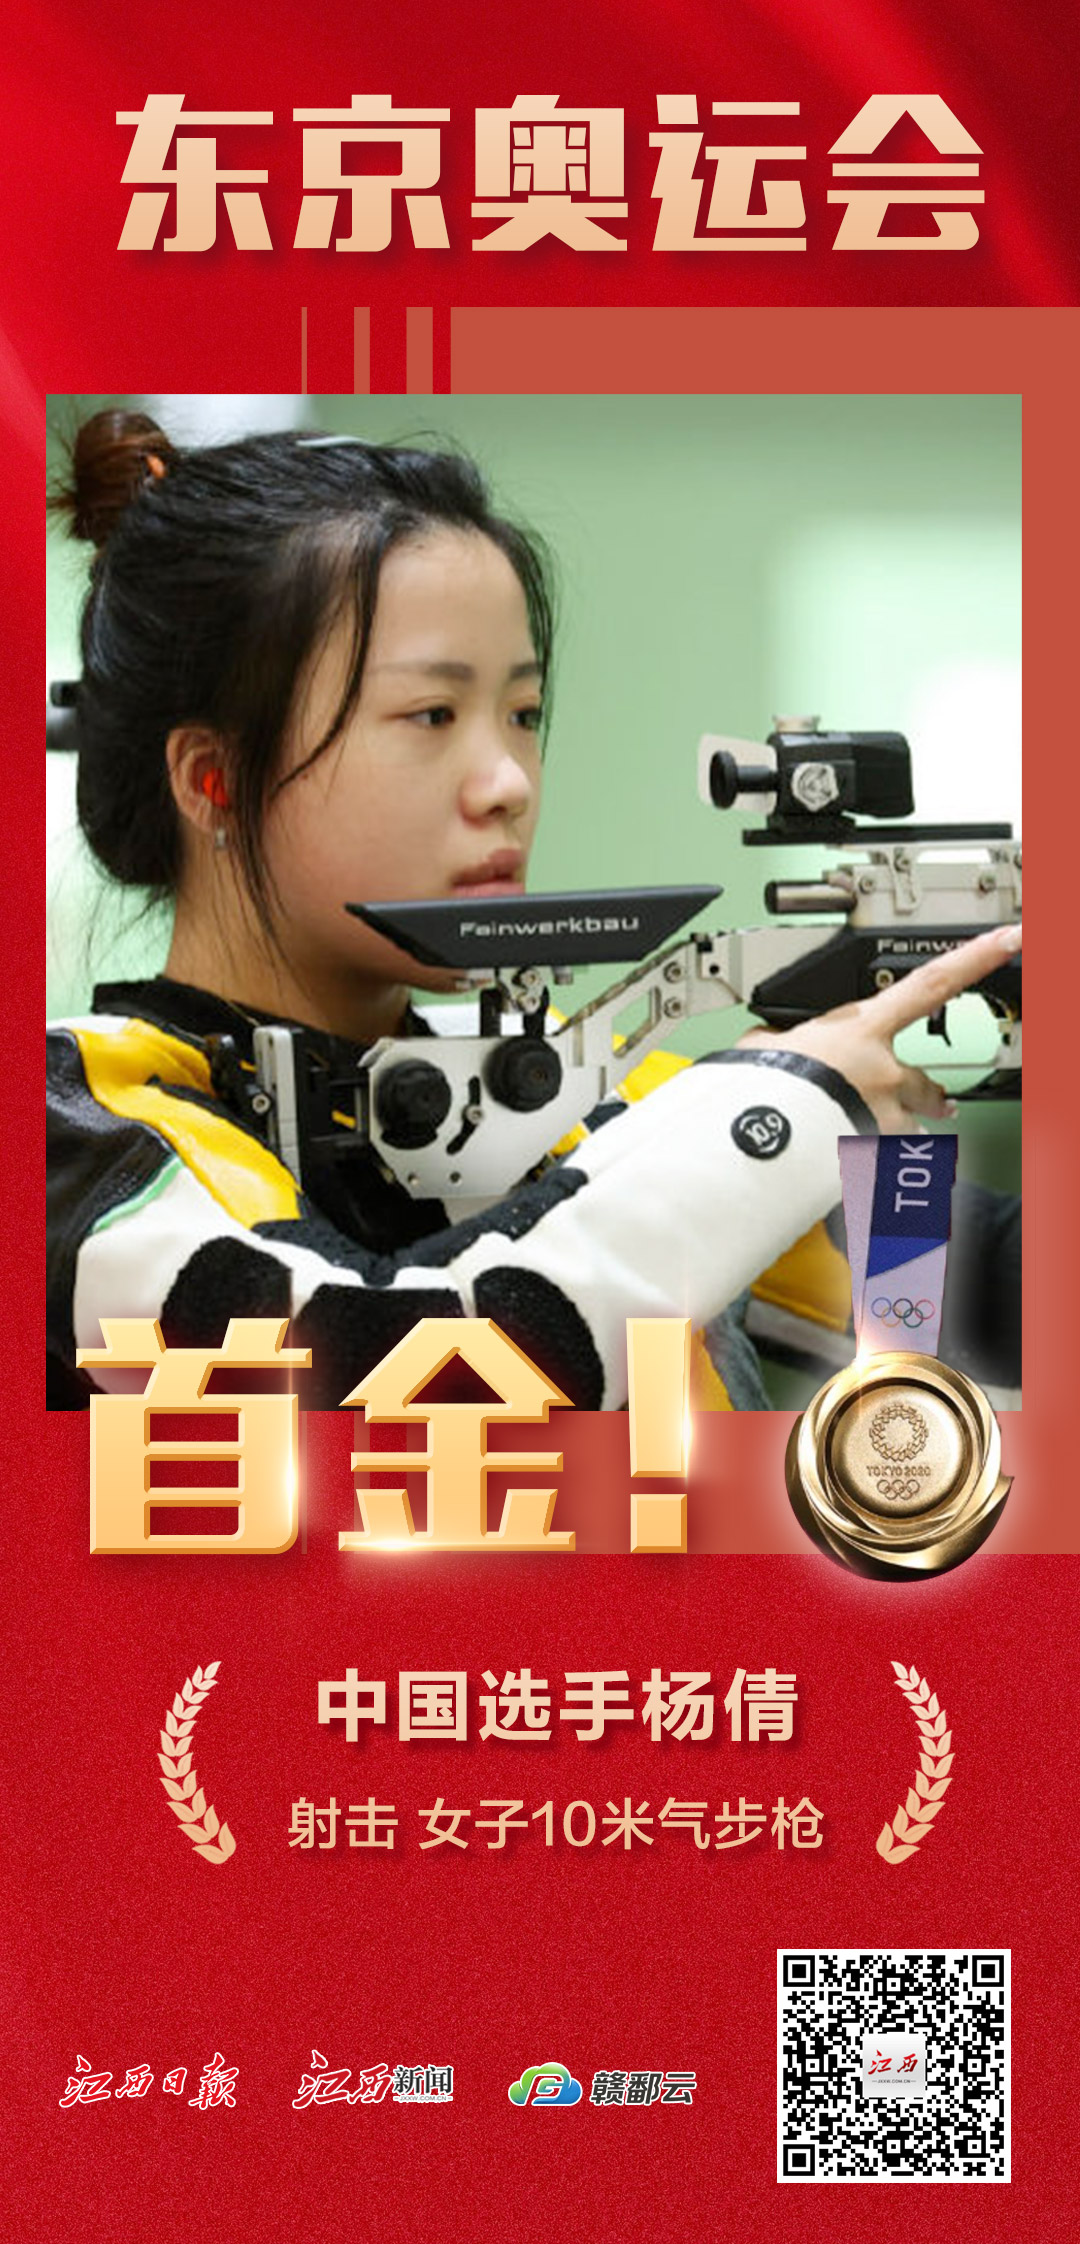 首金杨倩夺得东京奥运会射击女子10米气步枪金牌